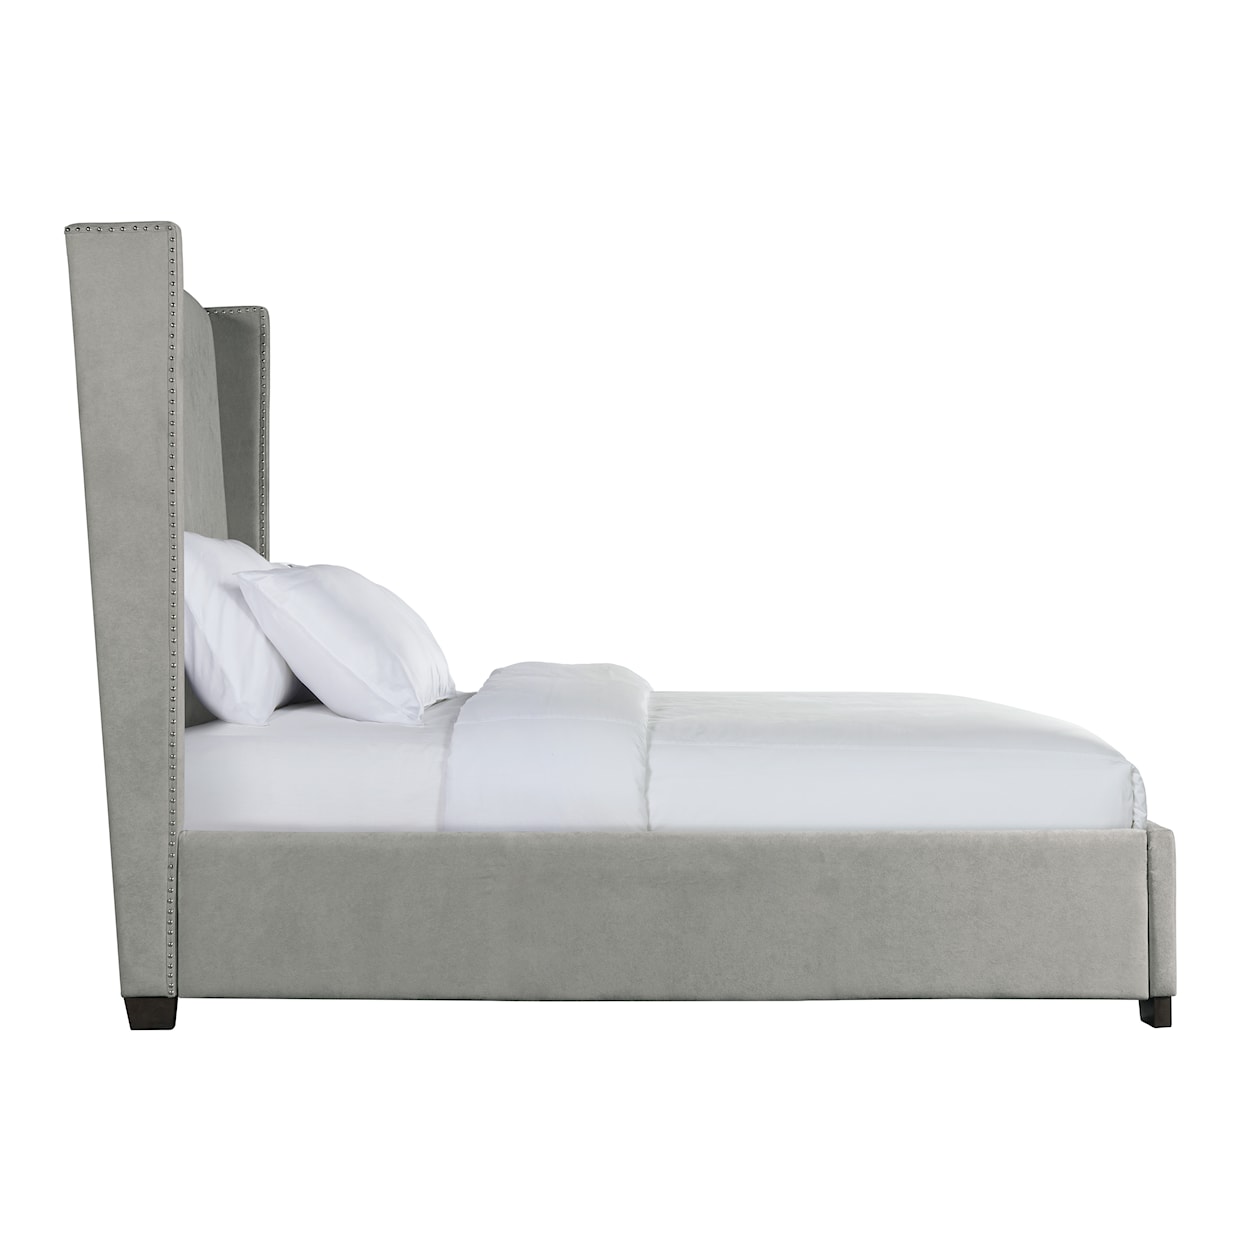 Elements International Magnolia King Upholstered Bed